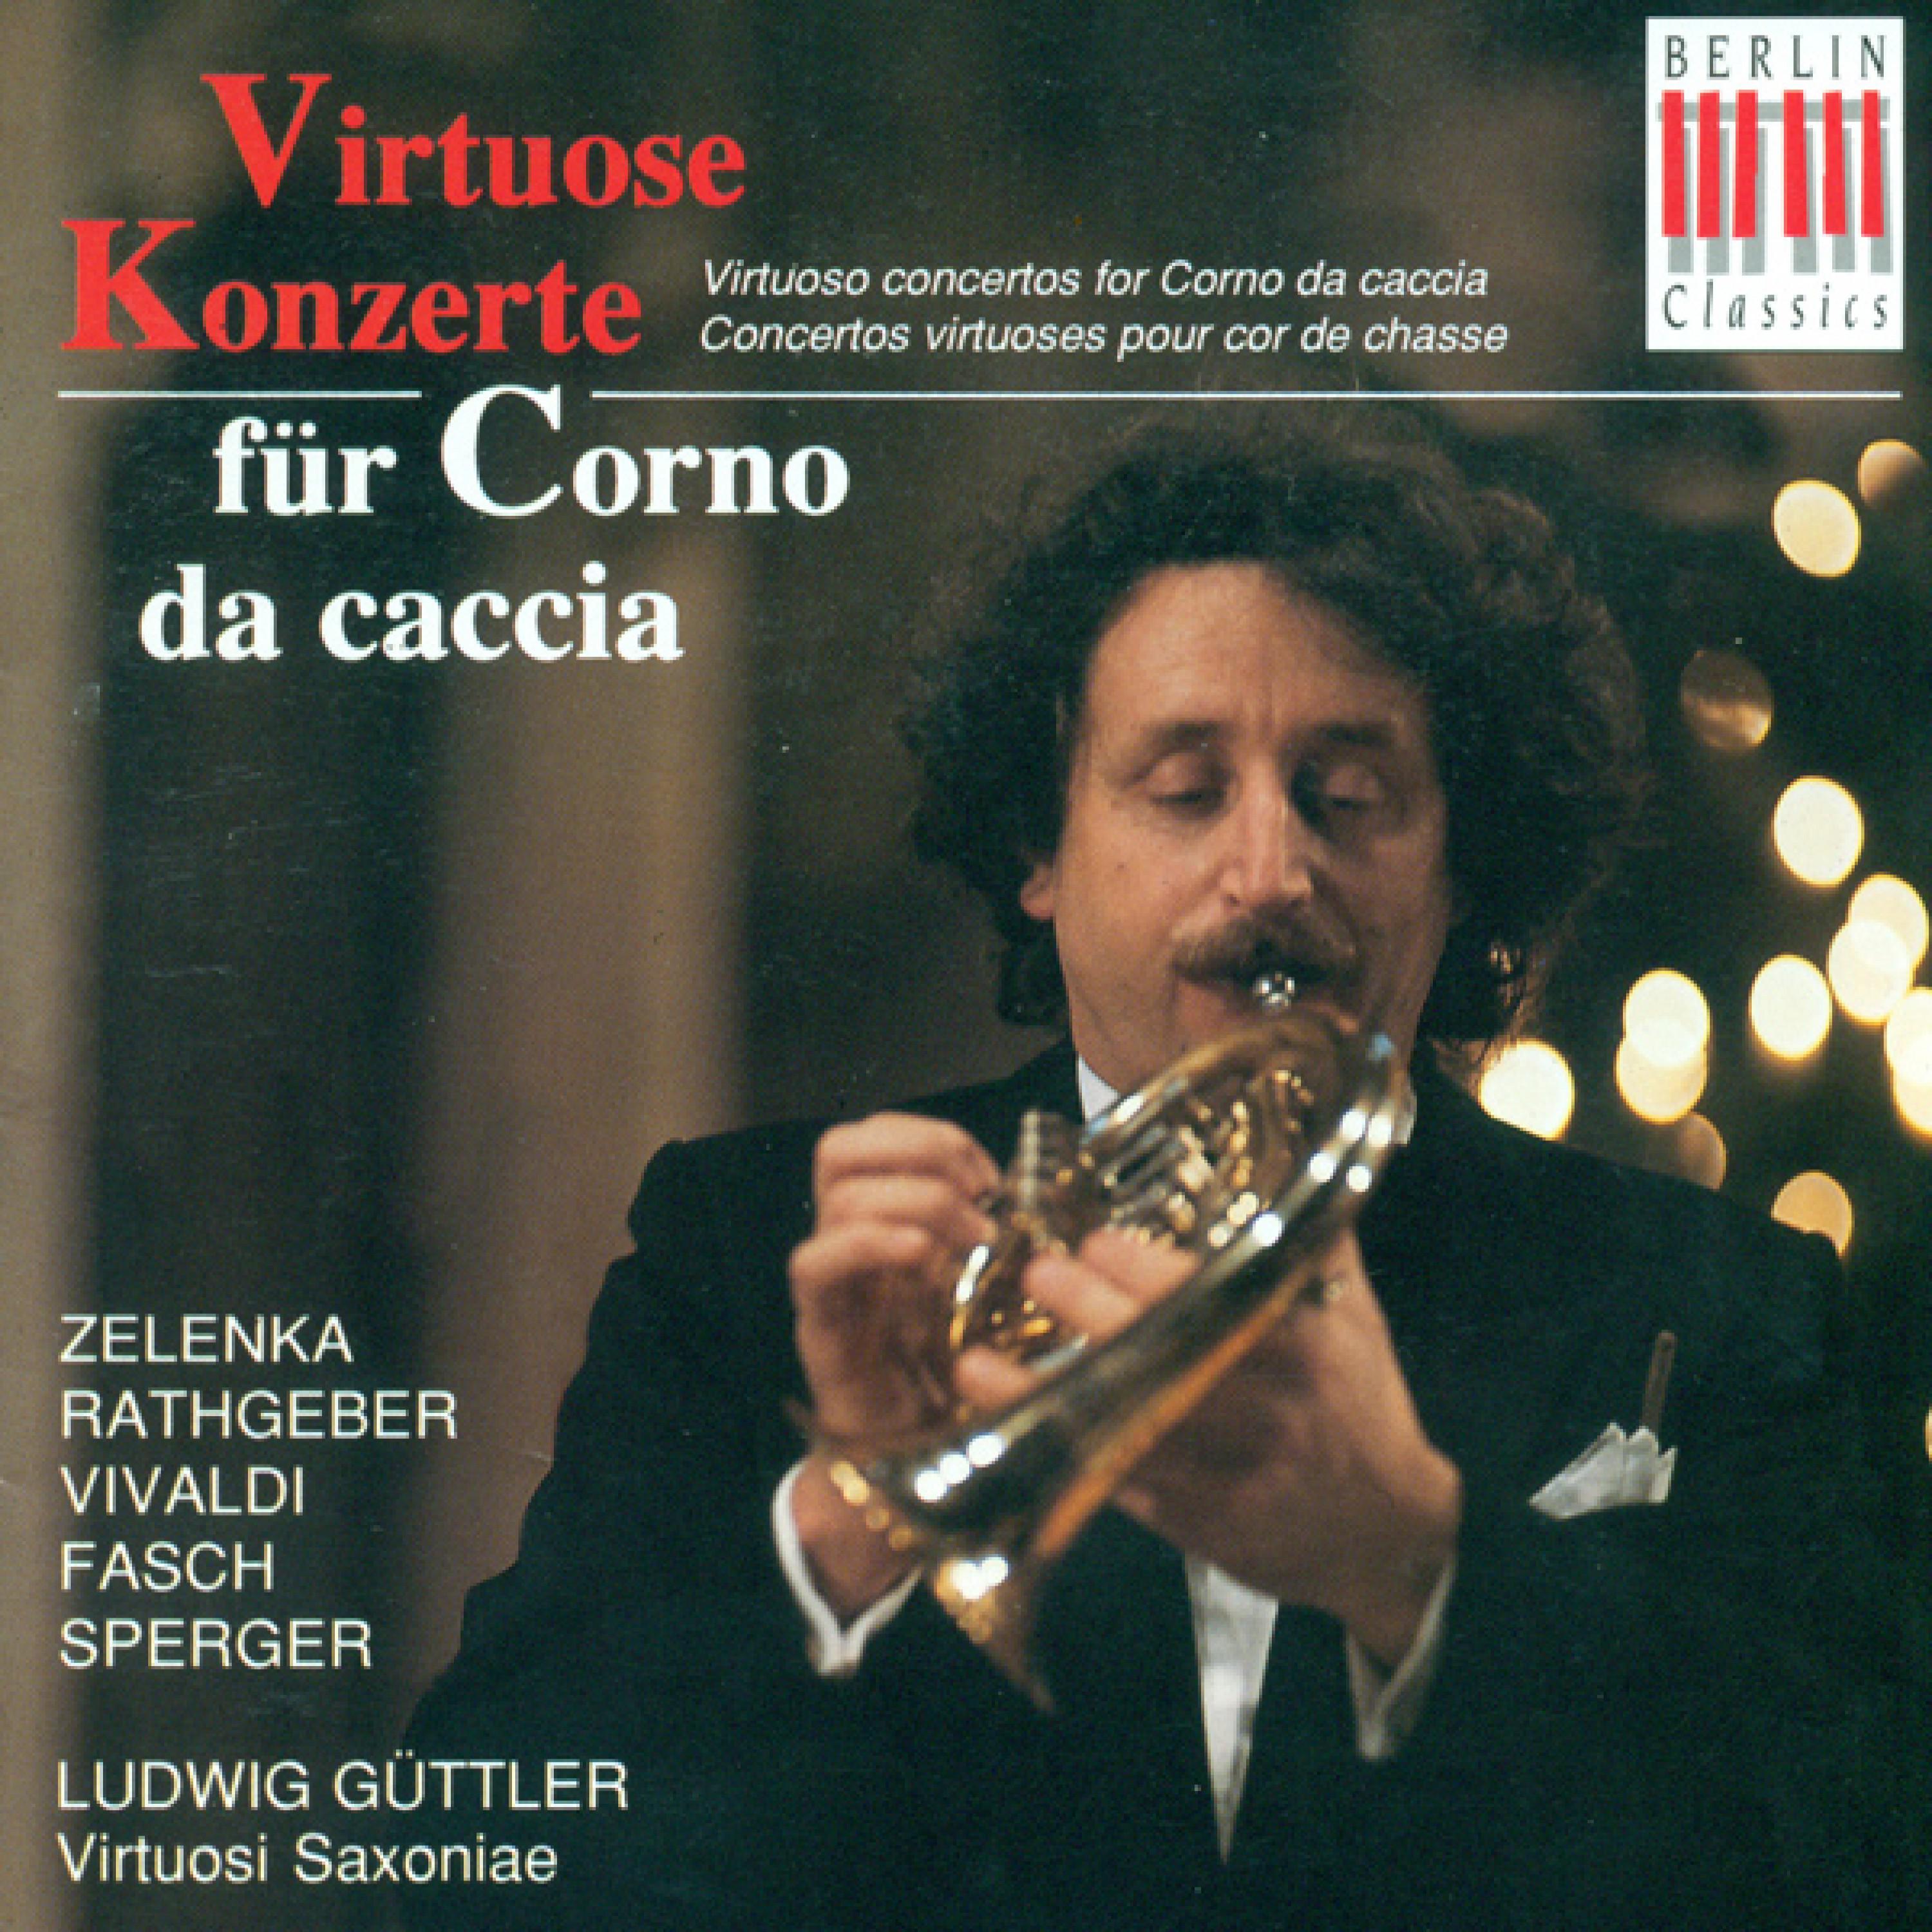 Concerto for Corno da Caccia in D Major: I. Allegro moderato